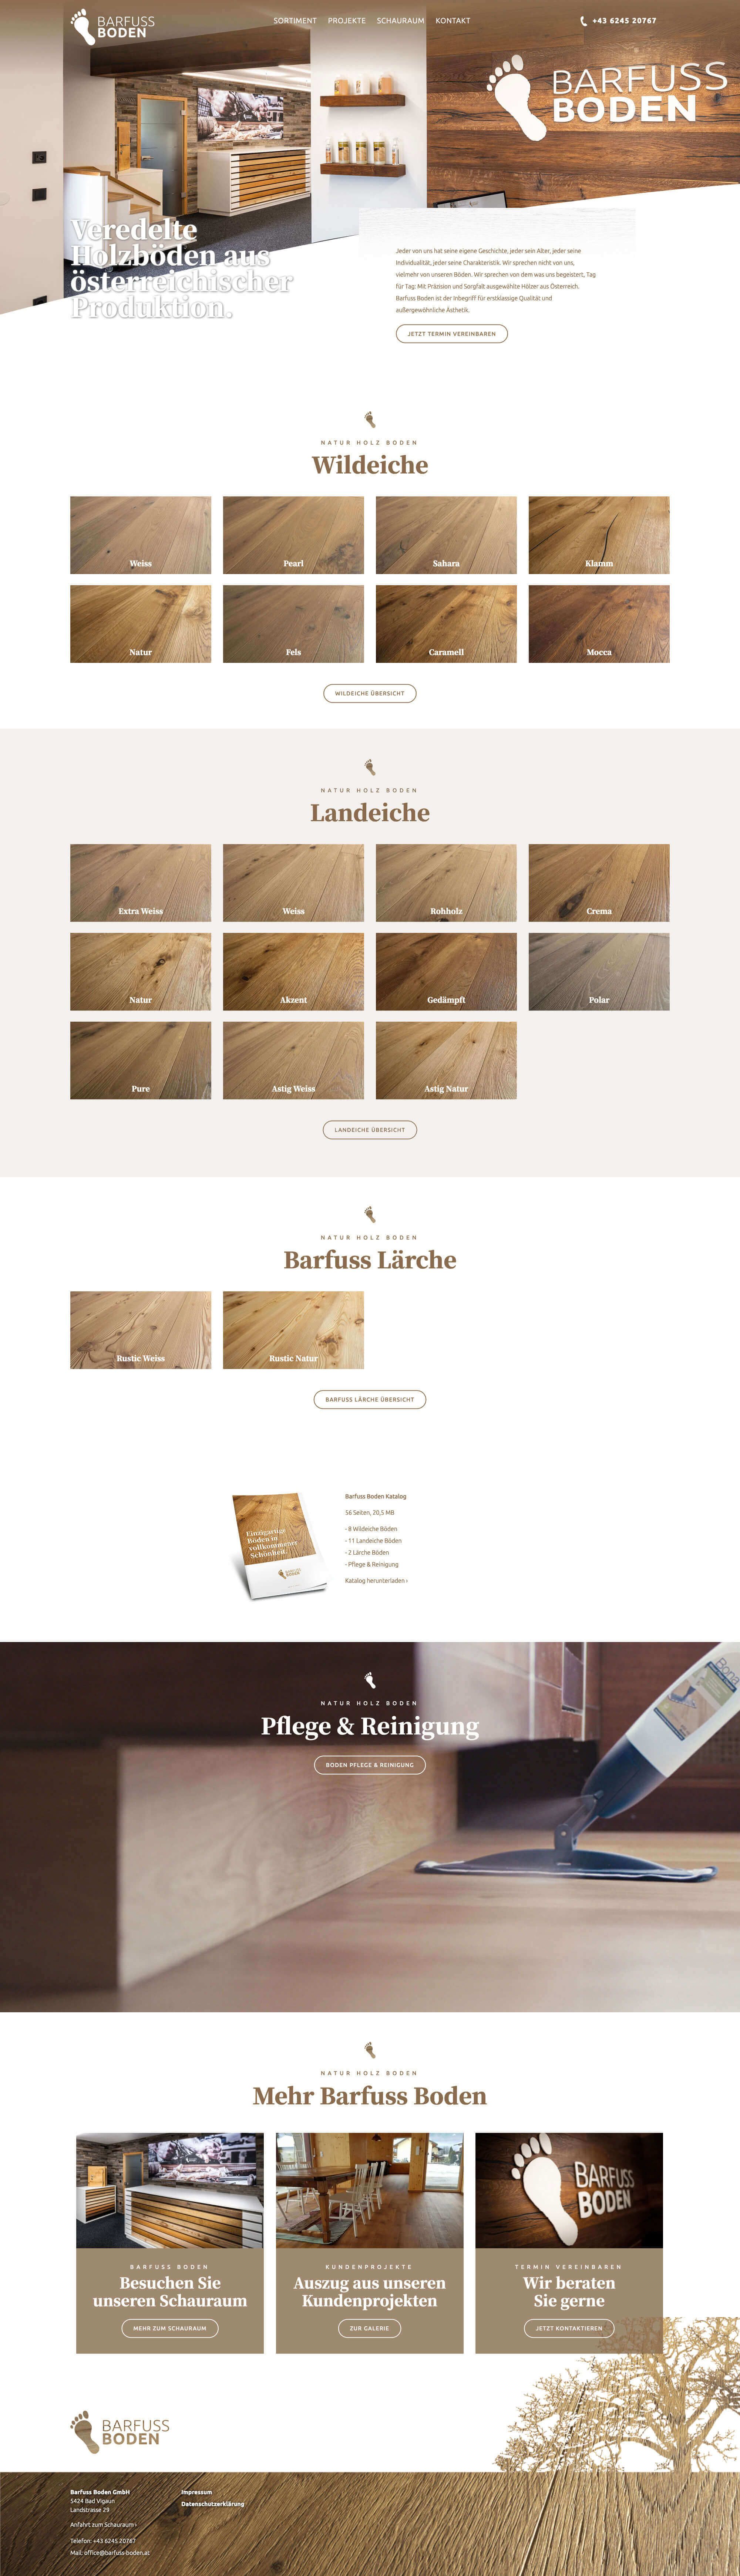 Website mit vielen Produktfotos von Holzböden die einzeln auswählbar sind.